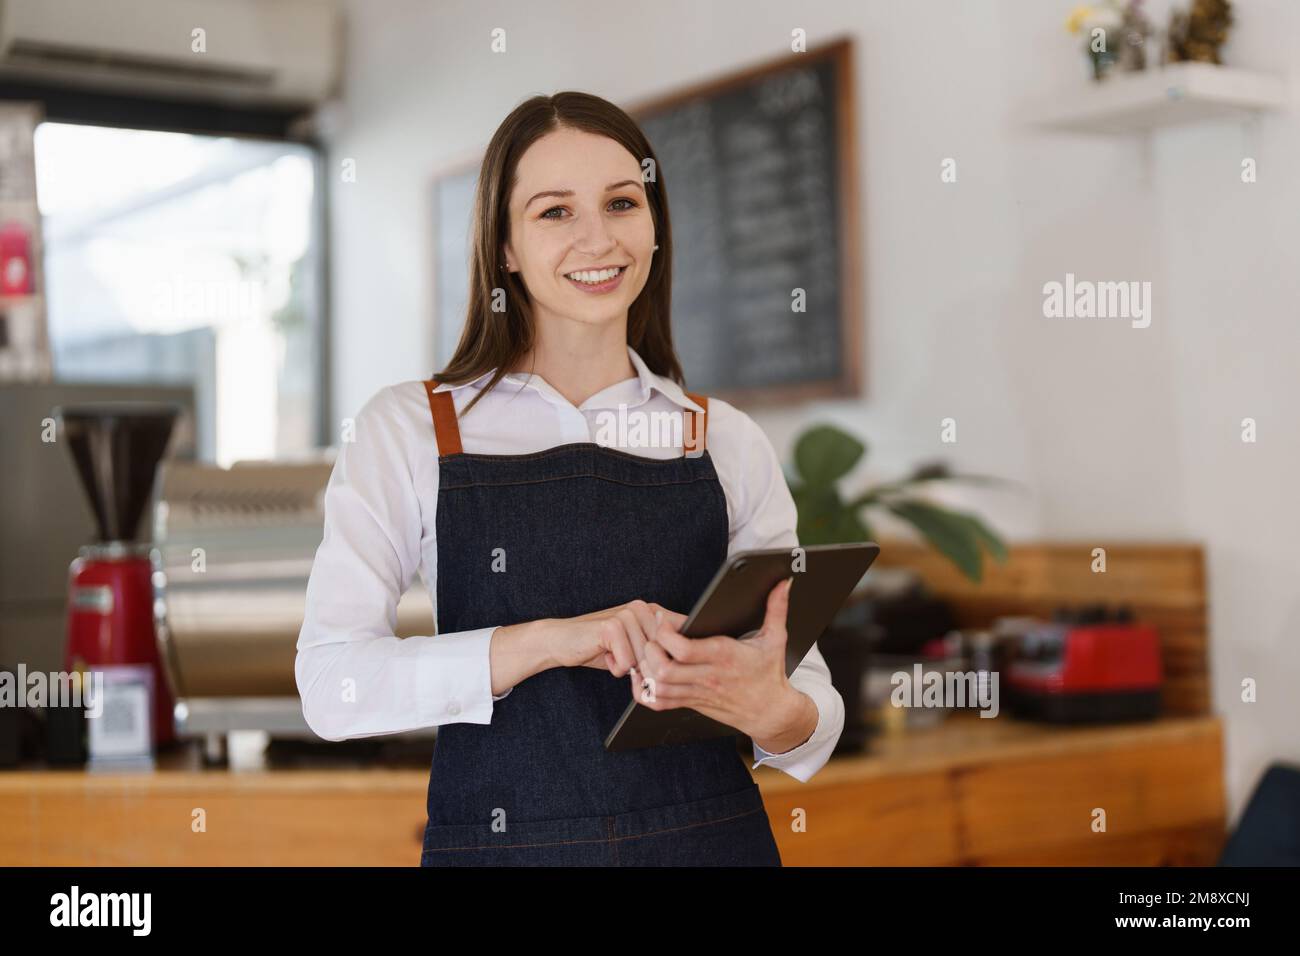 Jeune femme directrice au restaurant avec tablette. Femme propriétaire de café avec enseigne ouverte. Concept de petite entreprise Banque D'Images